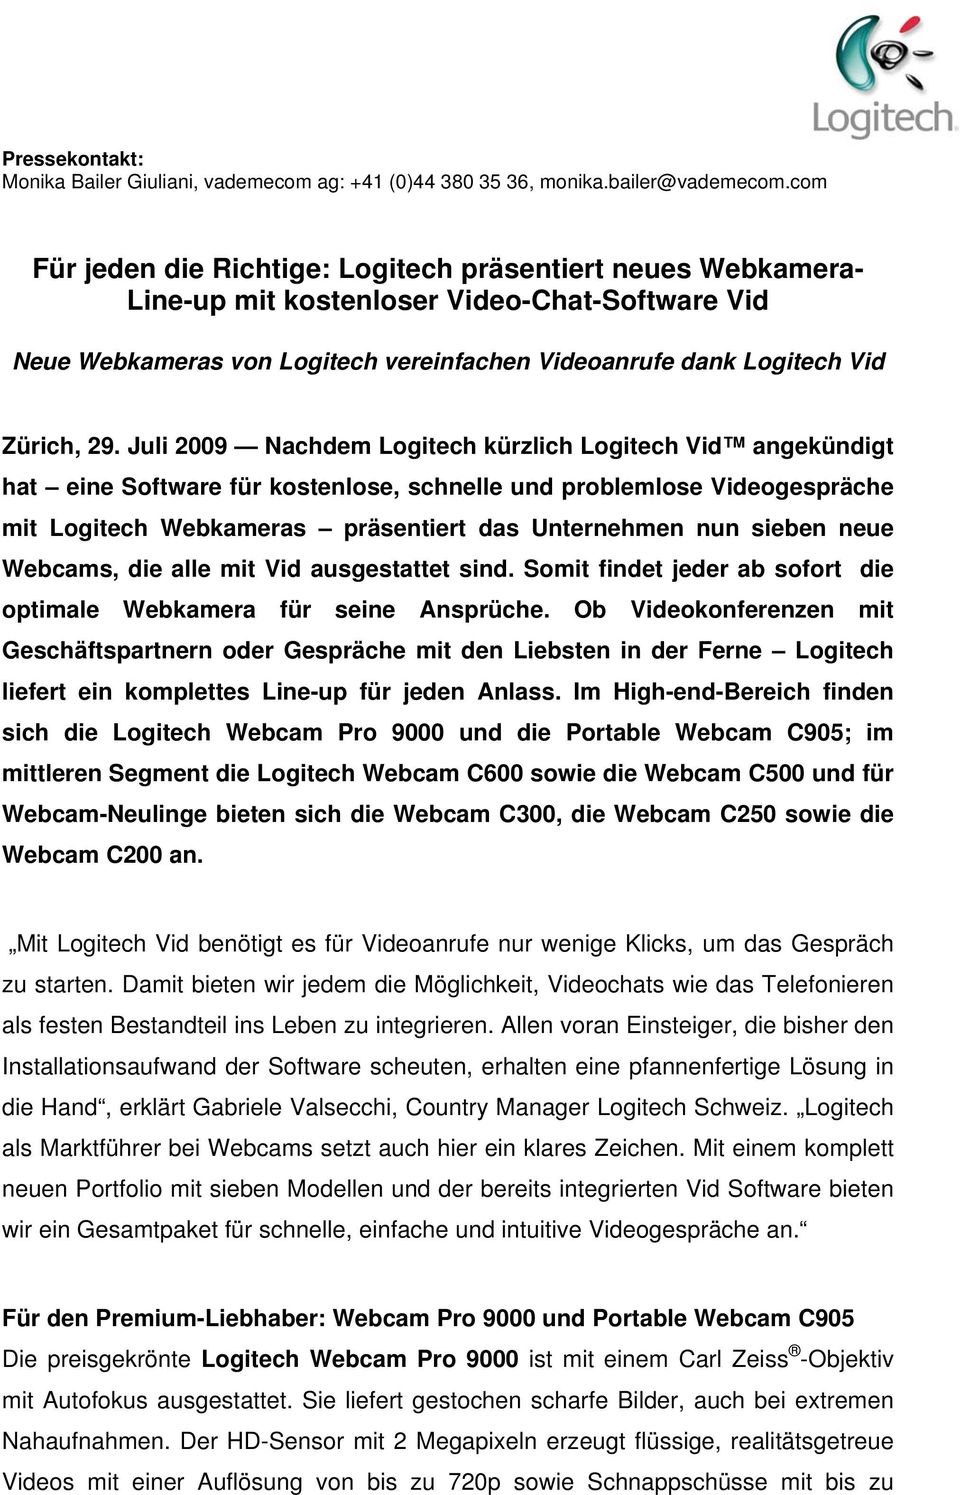 Juli 2009 Nachdem Logitech kürzlich Logitech Vid angekündigt hat eine Software für kostenlose, schnelle und problemlose Videogespräche mit Logitech Webkameras präsentiert das Unternehmen nun sieben